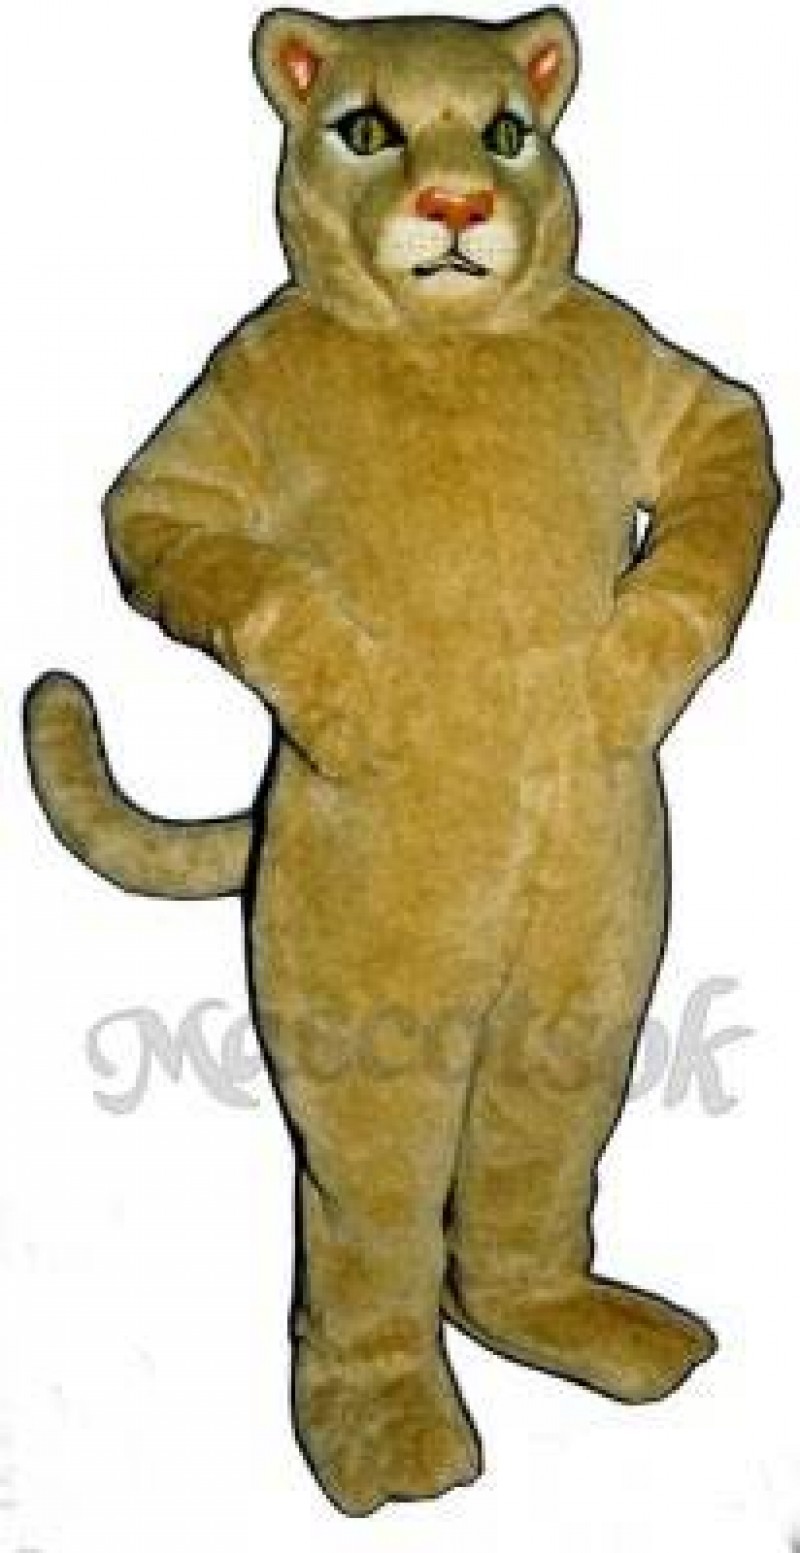 Cute Cougar Mascot Costume